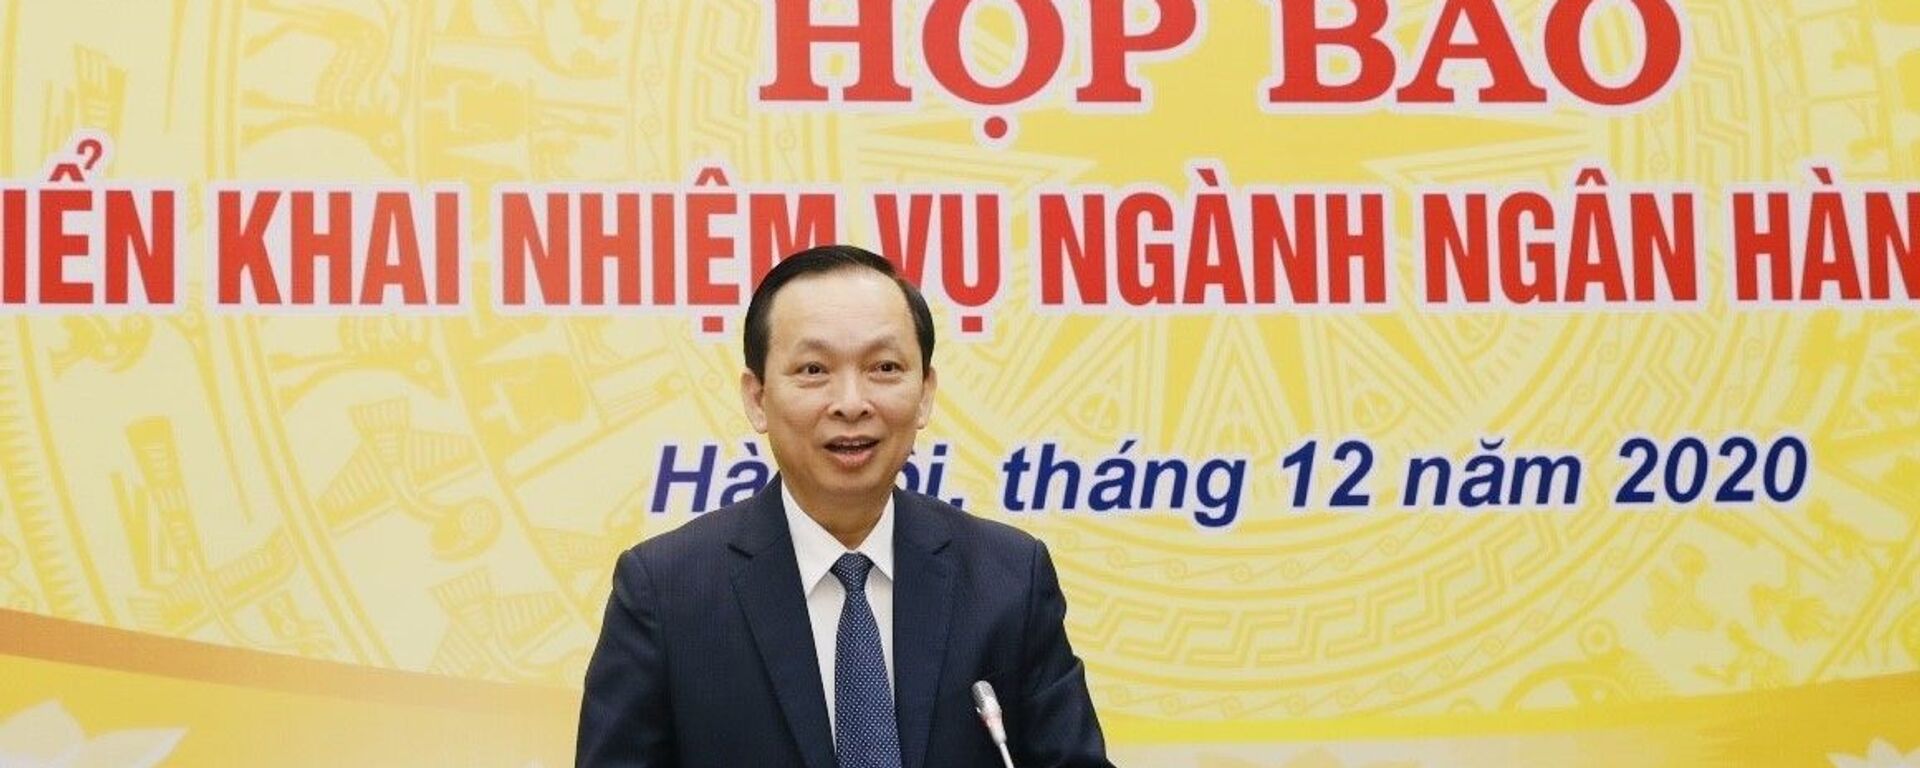 Phó Thống đốc NHNN Việt Nam Đào Minh Tú báo cáo hoạt động năm 2019 và nhiệm vụ năm 2020. - Sputnik Việt Nam, 1920, 08.01.2021